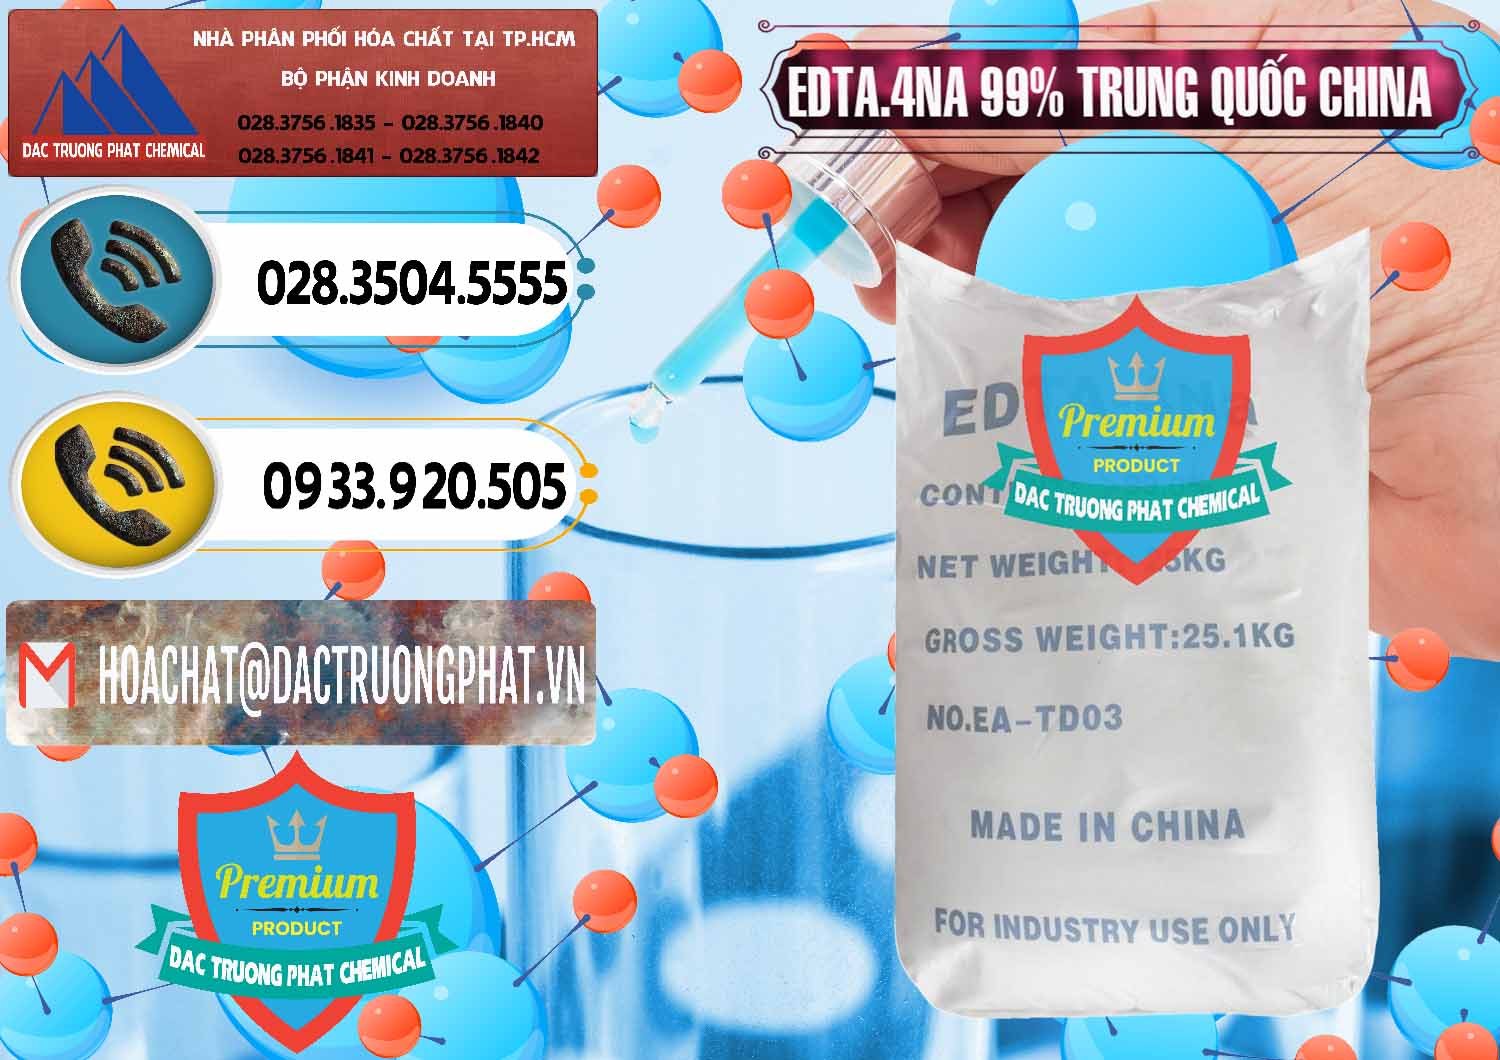 Chuyên cung ứng - bán EDTA.4NA - EDTA Muối 99% Trung Quốc China - 0292 - Cty chuyên nhập khẩu _ cung cấp hóa chất tại TP.HCM - hoachatdetnhuom.vn